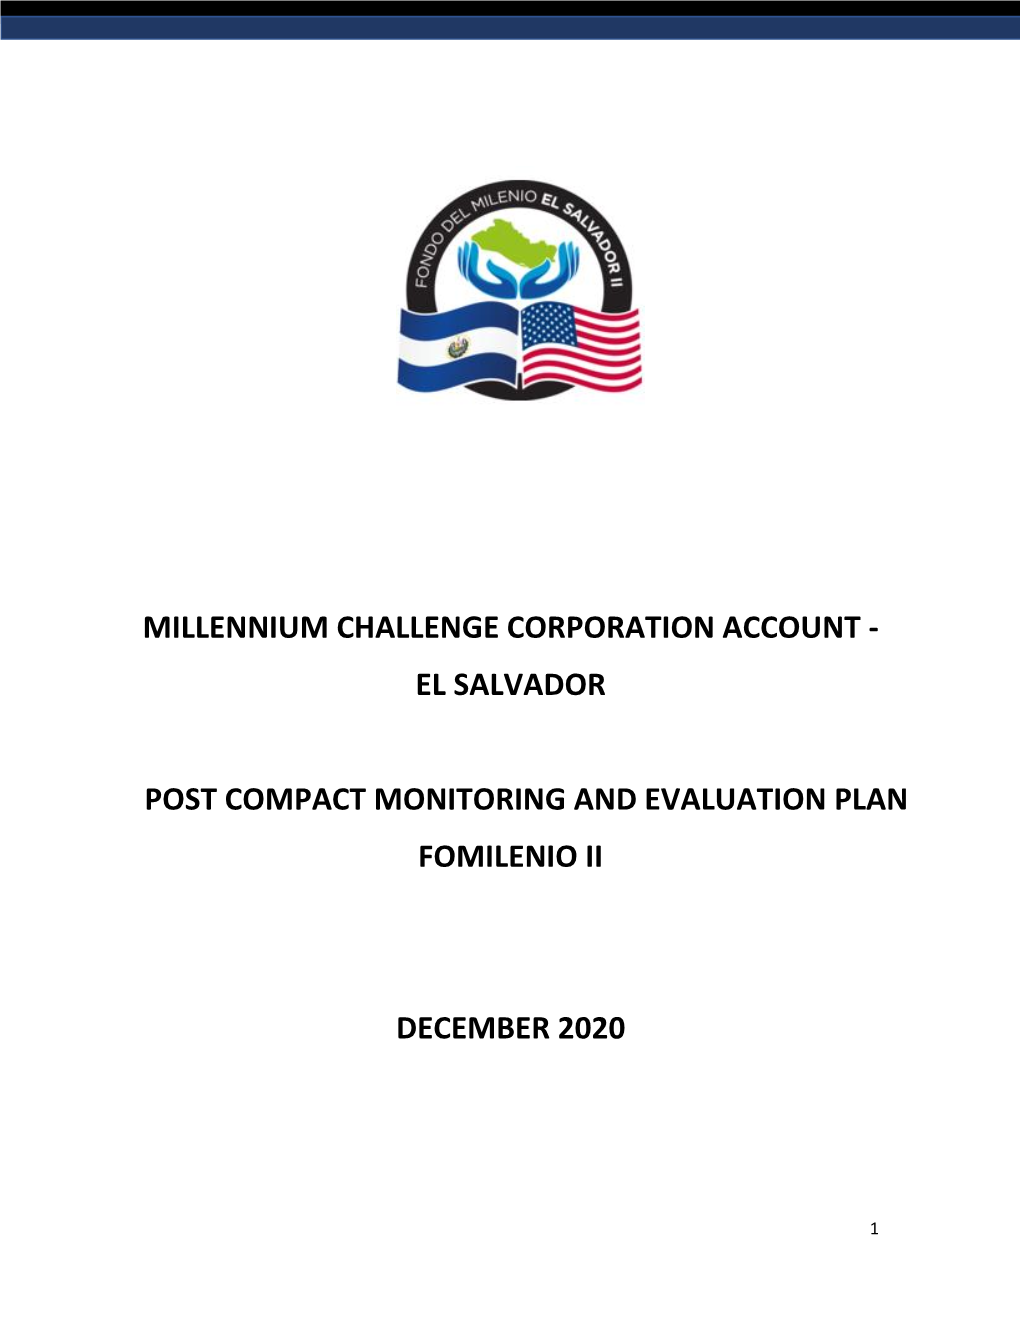 El Salvador Post Compact Monitoring and Evaluation Plan Fomilenio Ii